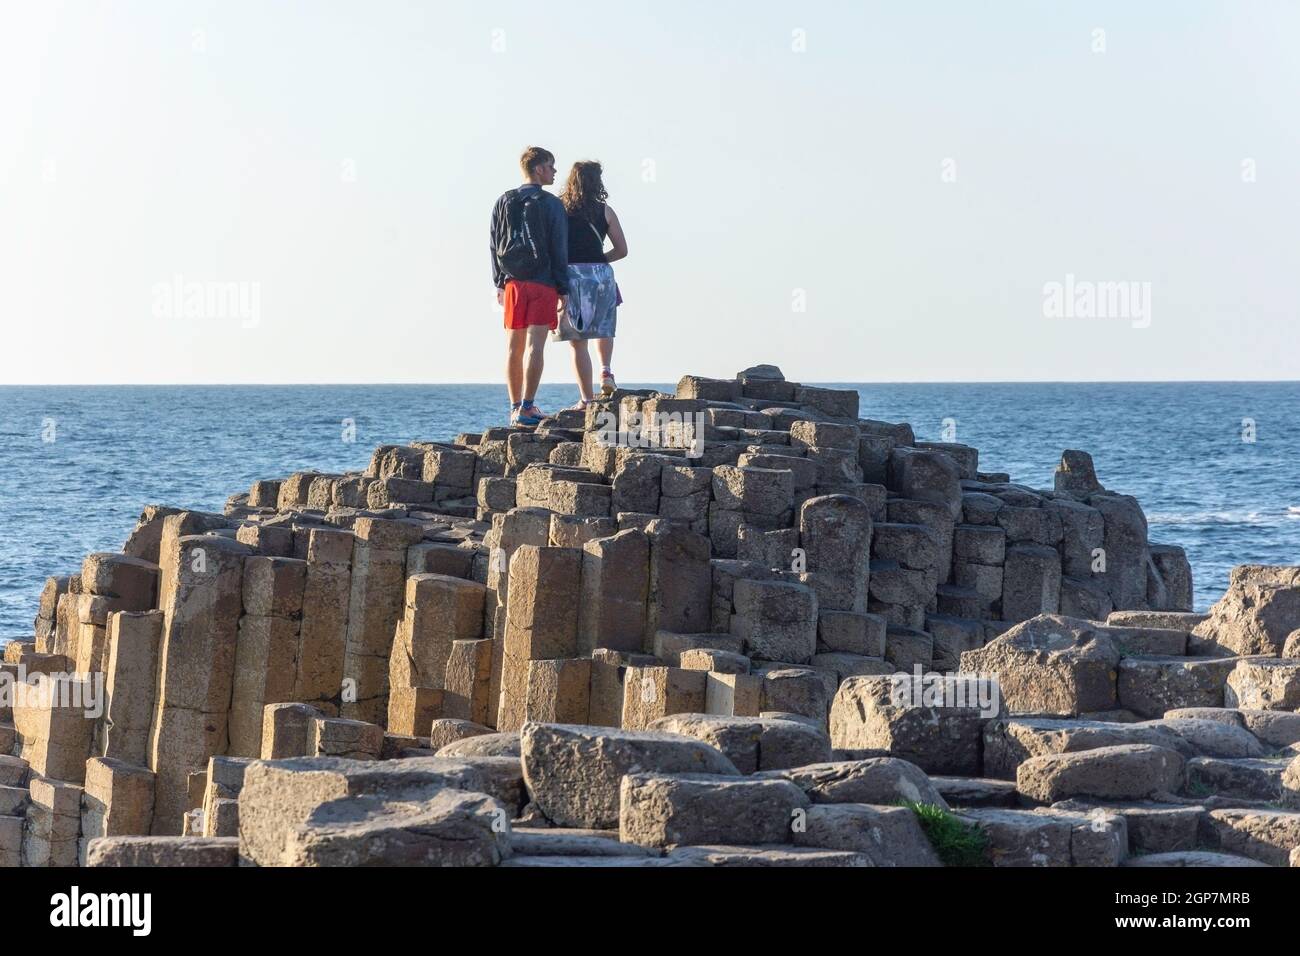 Jeune couple debout sur des colonnes de basalte, la chaussée des géants, Causeway Coast, près de Bushmills, comté d'Antrim, Irlande du Nord, Royaume-Uni Banque D'Images